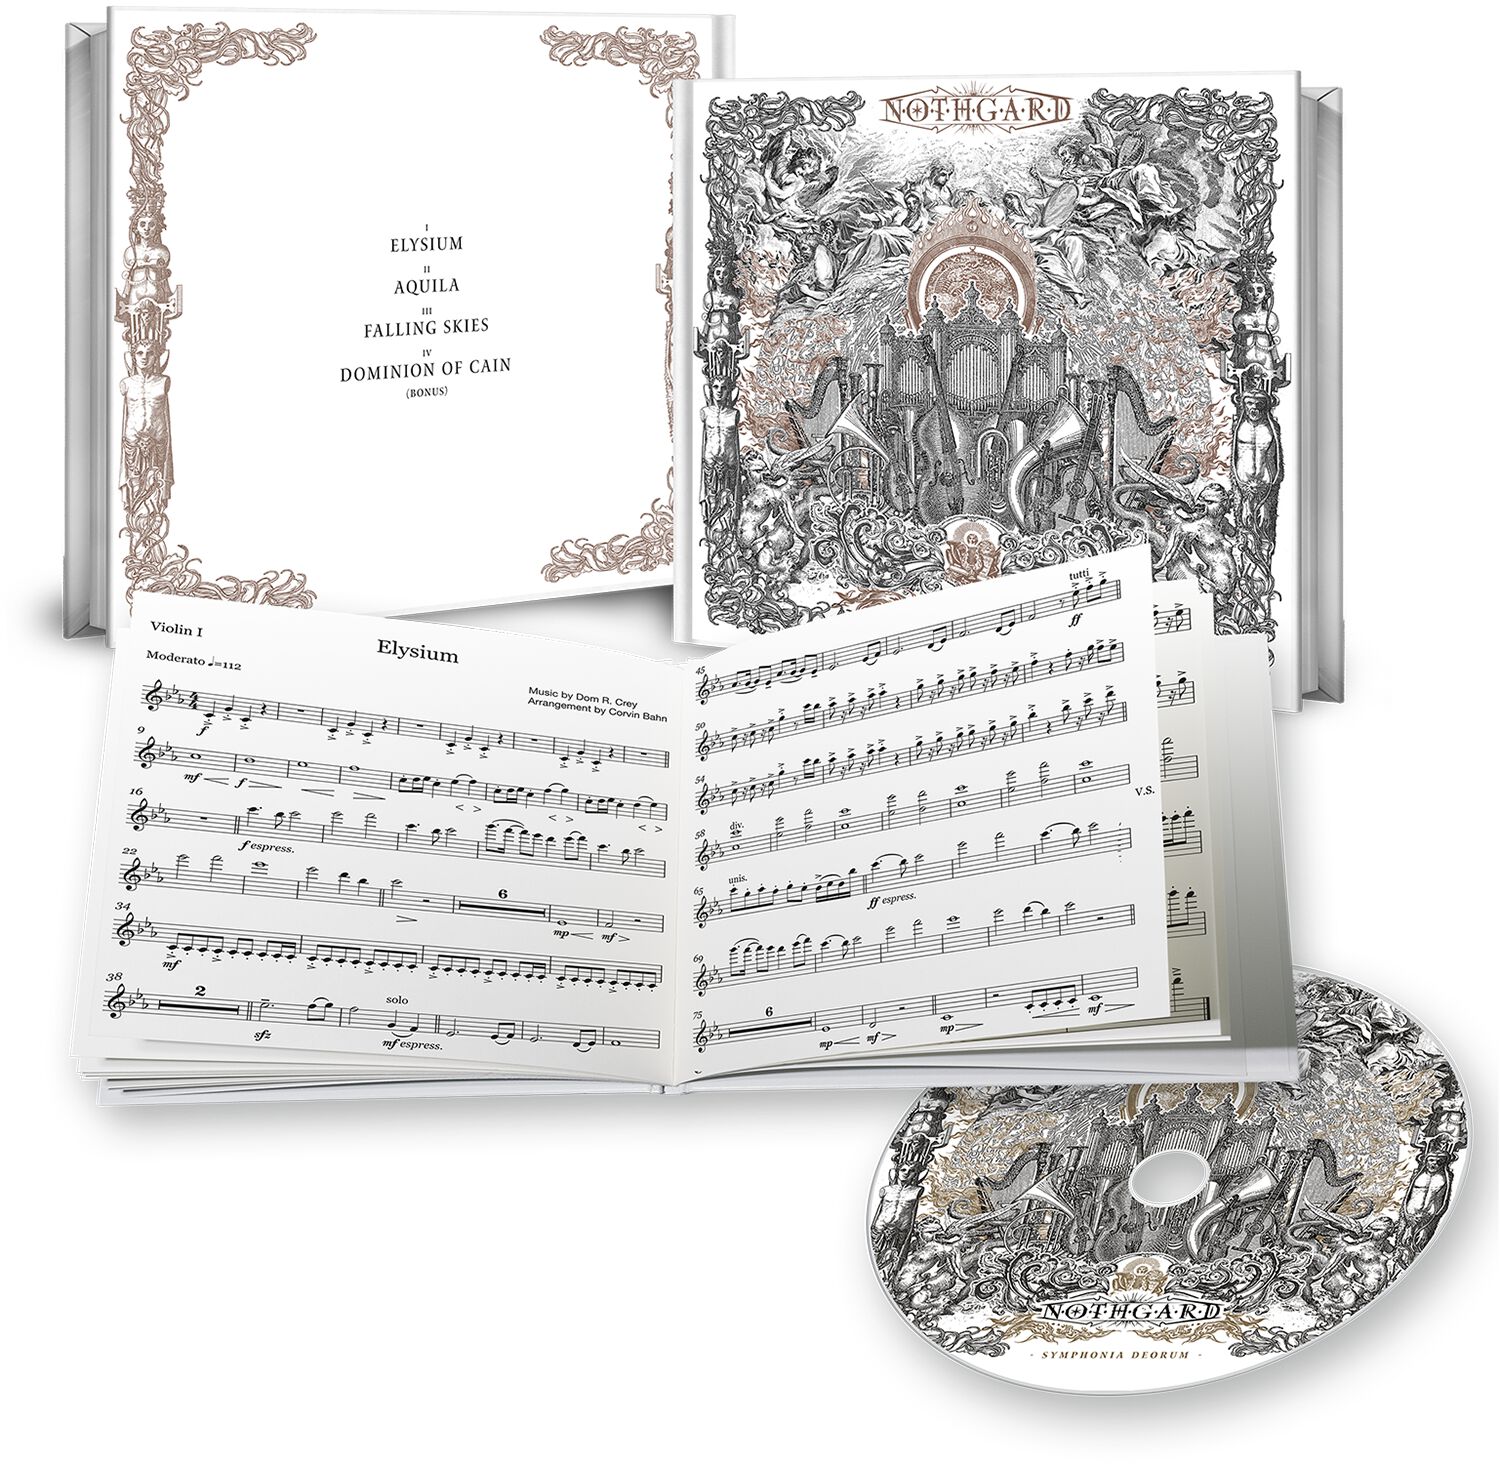 Nothgard Symphonia deorum CD multicolor